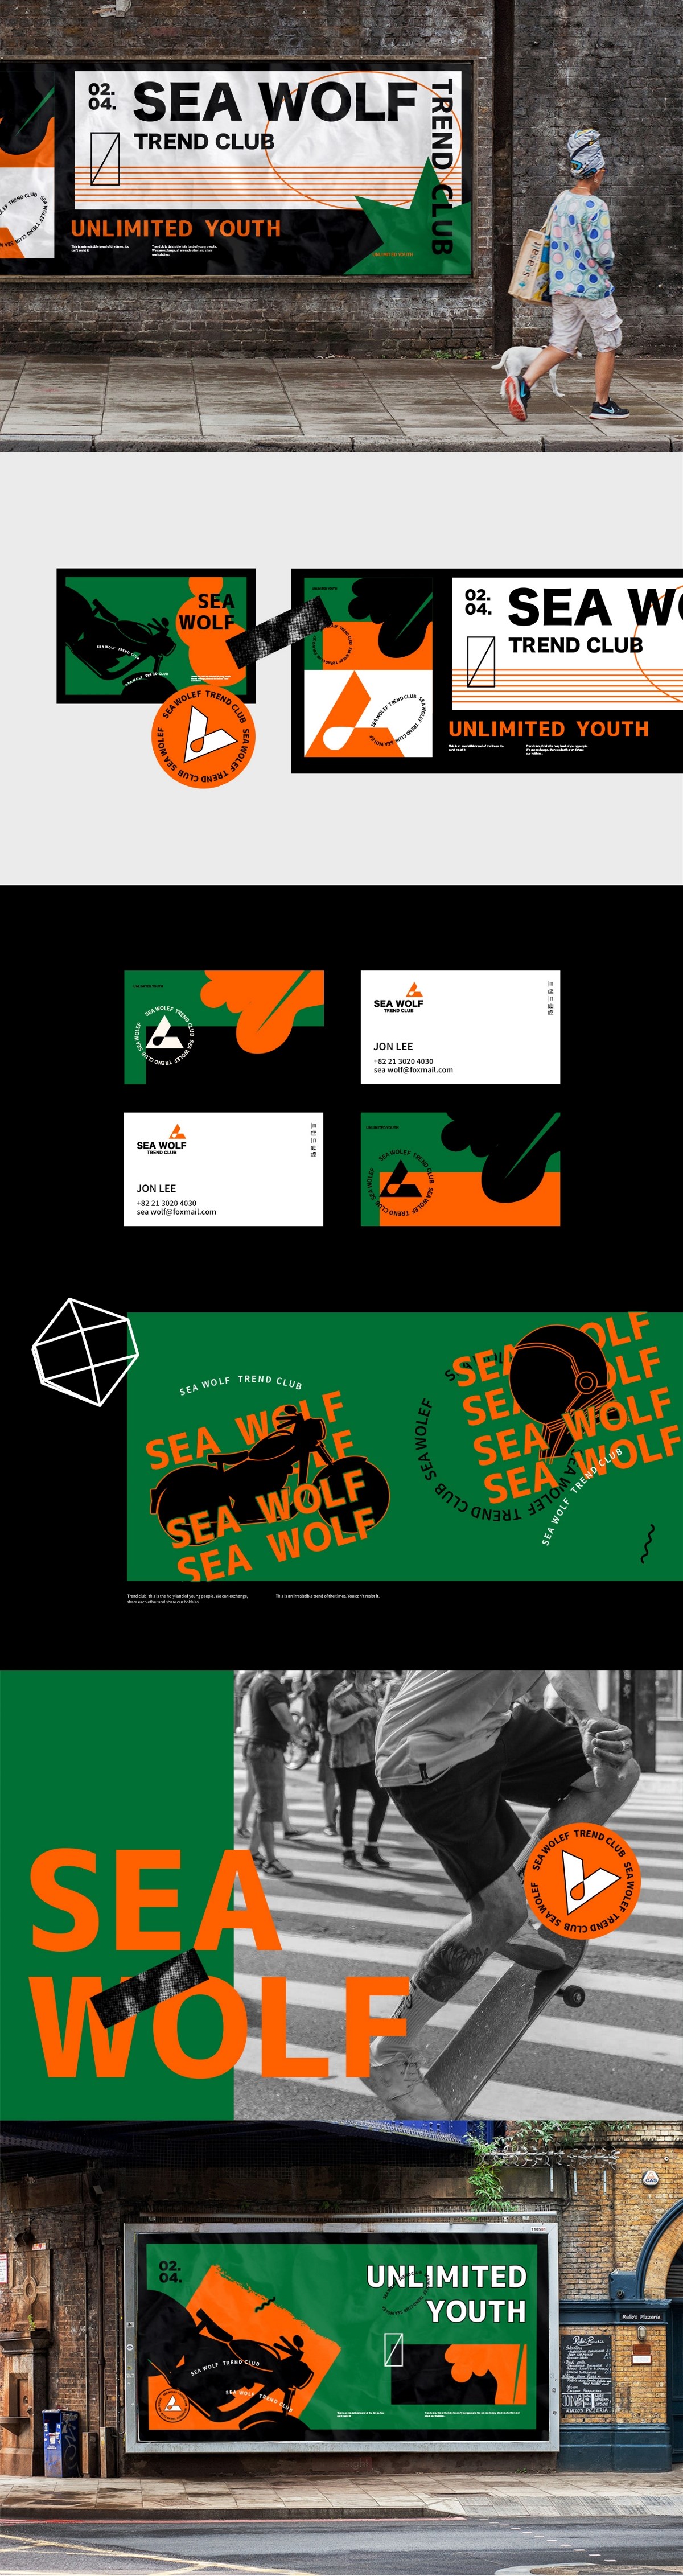 SEA WOLF-TREND CLUB